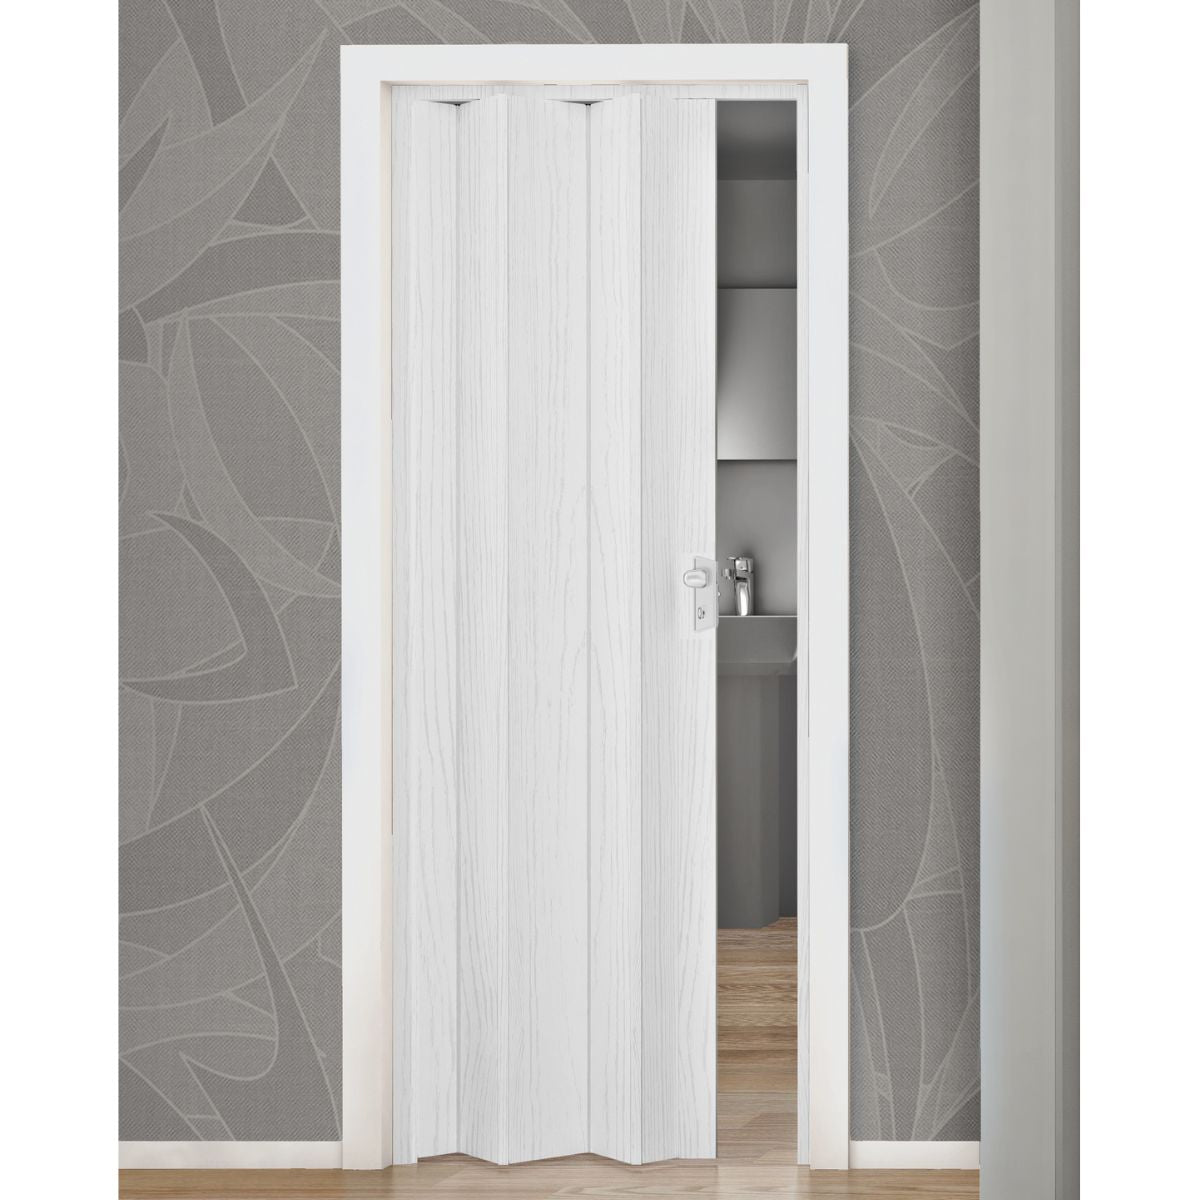 Fortesrl Maya vouwdeur zonder glas in kleur wit essen BxH 83x214 cm